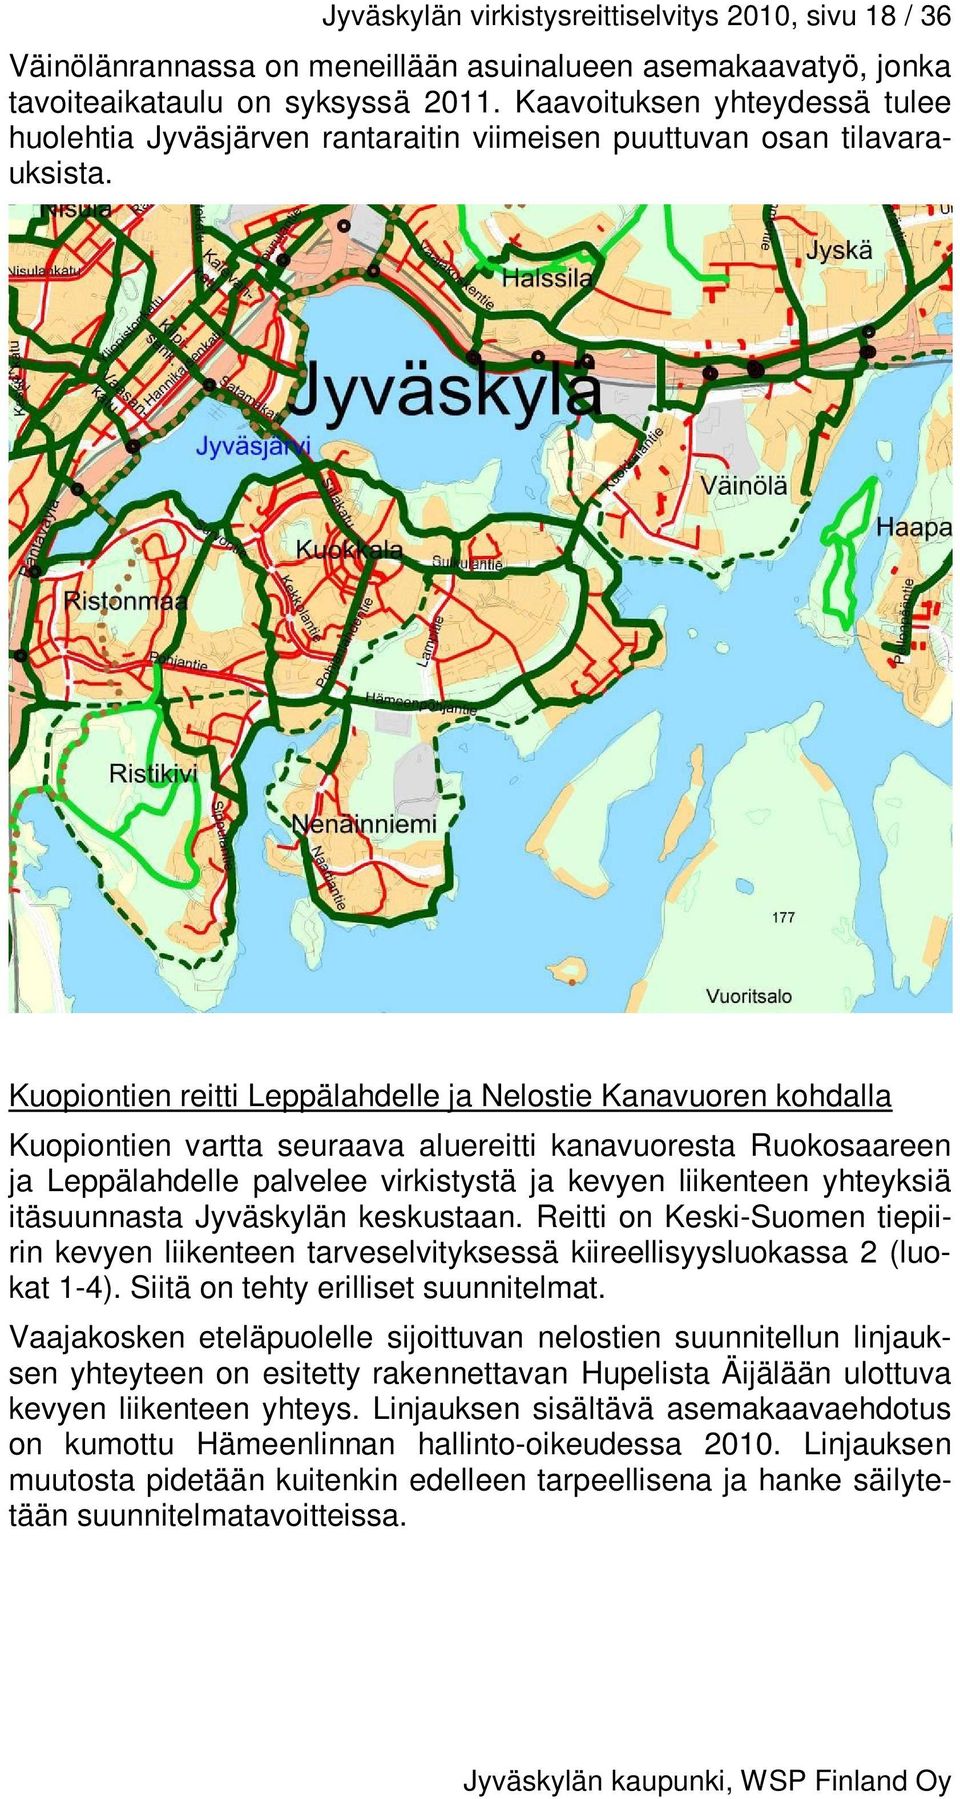 Kuopiontien reitti Leppälahdelle ja Nelostie Kanavuoren kohdalla Kuopiontien vartta seuraava aluereitti kanavuoresta Ruokosaareen ja Leppälahdelle palvelee virkistystä ja kevyen liikenteen yhteyksiä